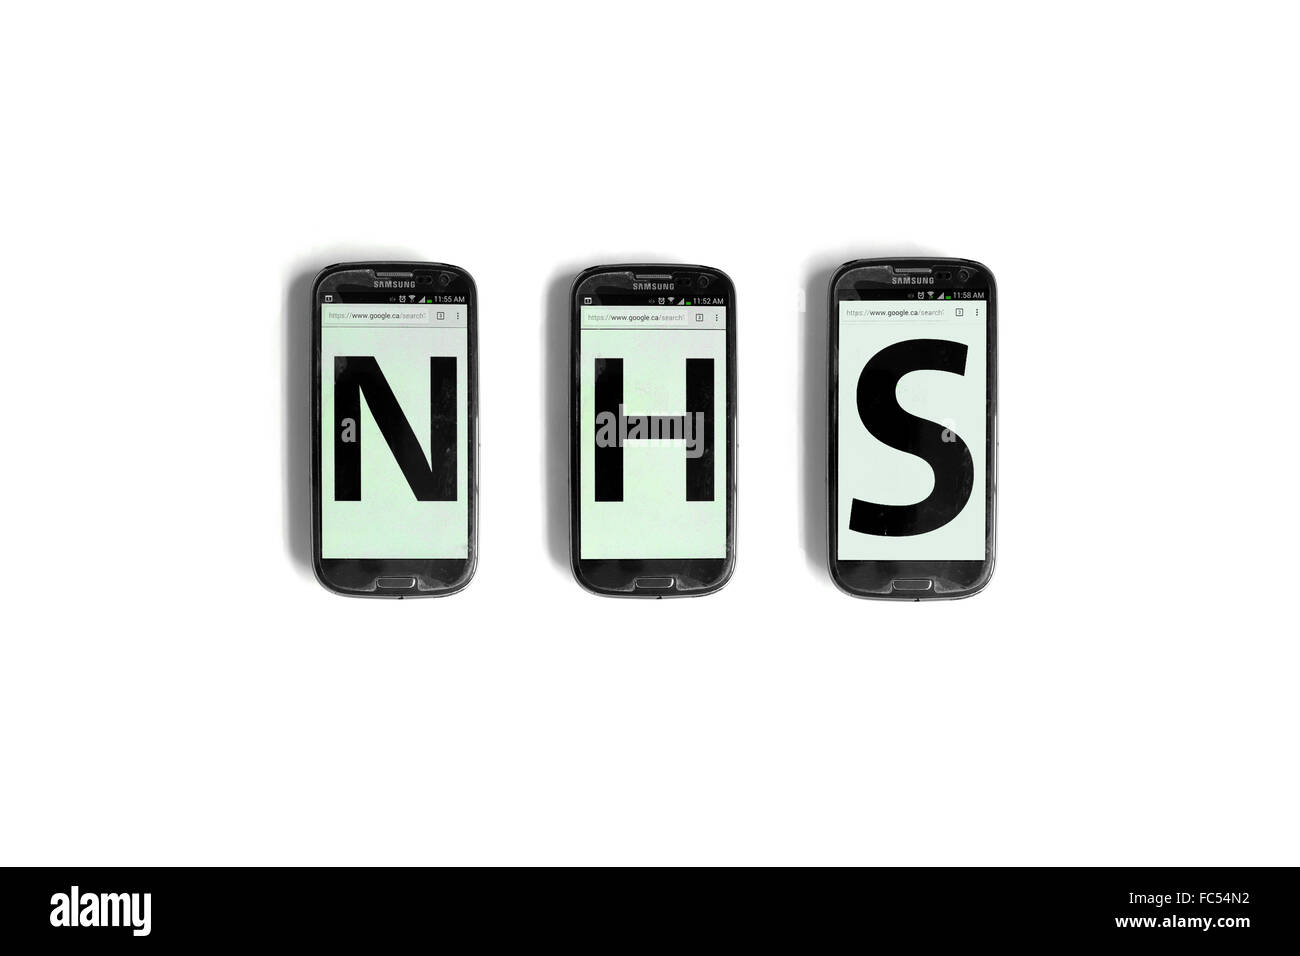 NHS écrit sur l'écran des smartphones photographié sur un fond blanc. Banque D'Images